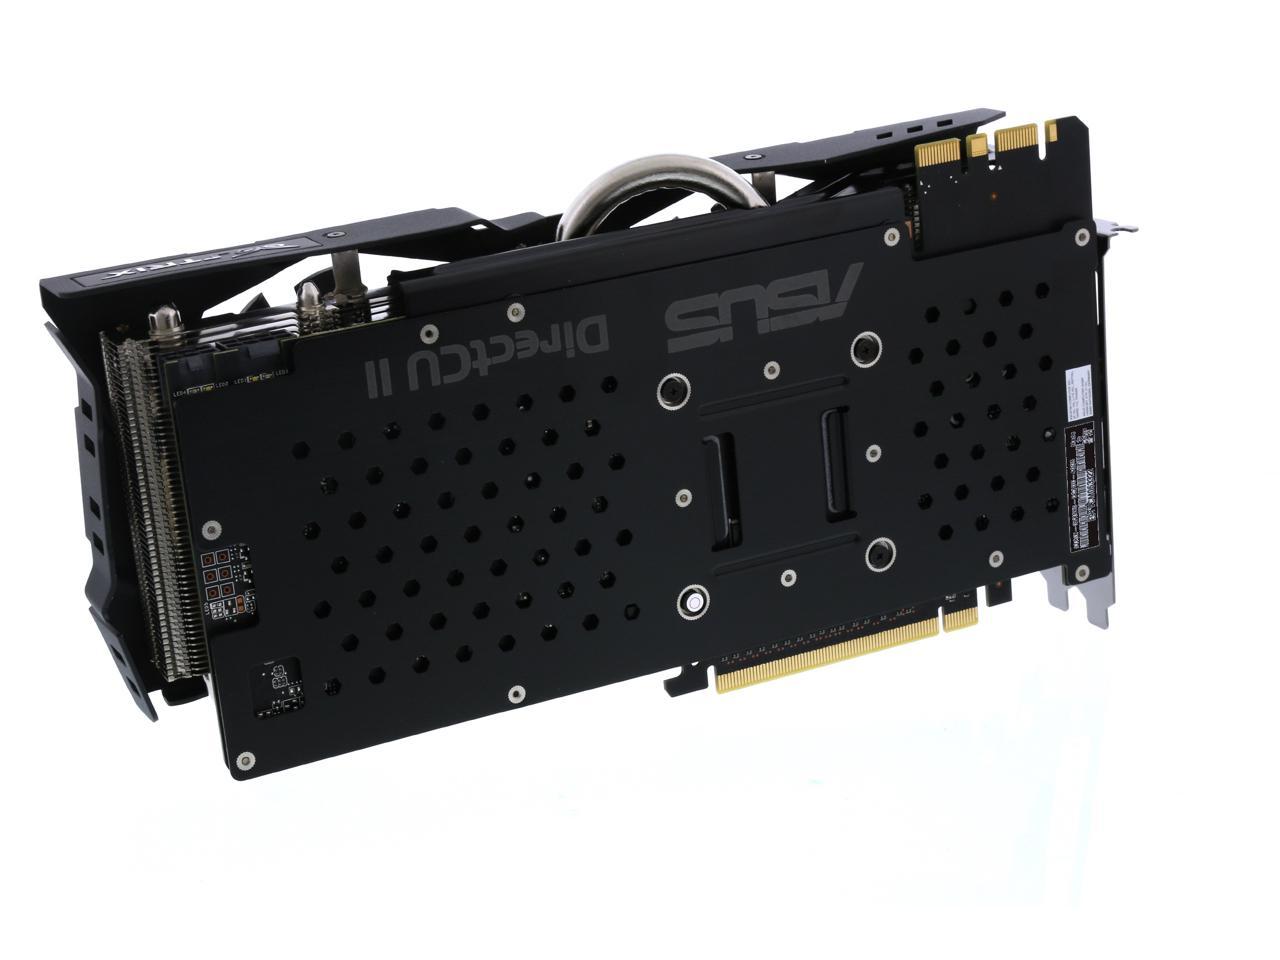 ASUS GeForce GTX 980 Video Card STRIX-GTX980-DC2OC-4GD5 